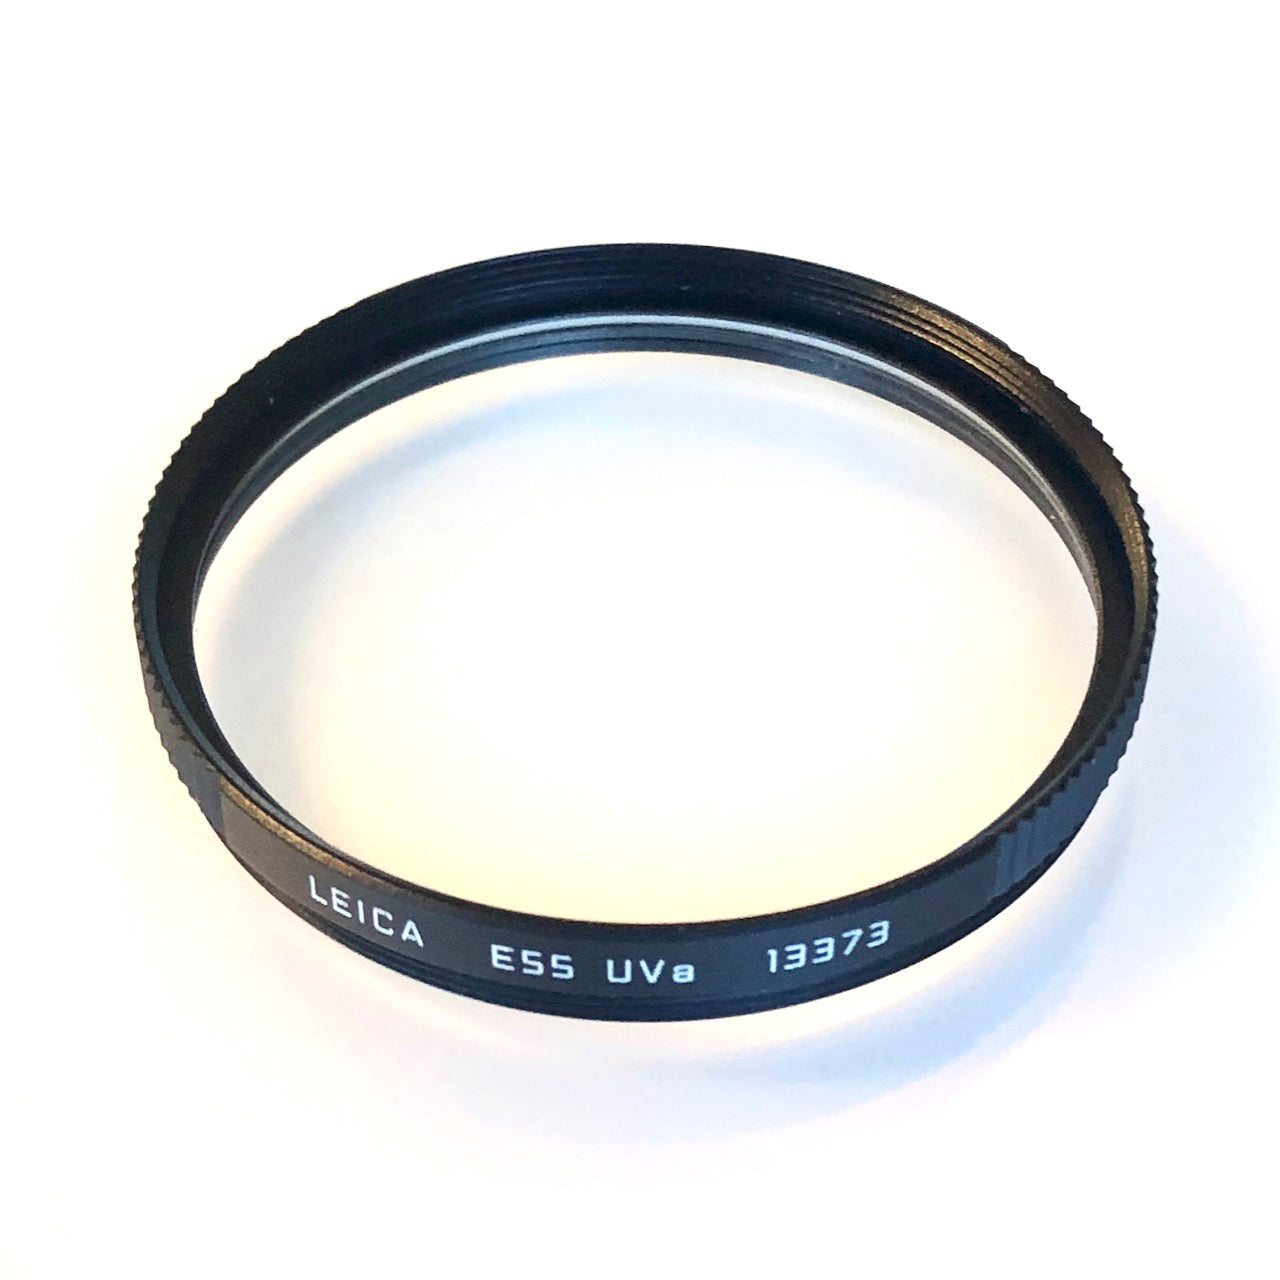 Leica E55 UVa 13373 (55mm)